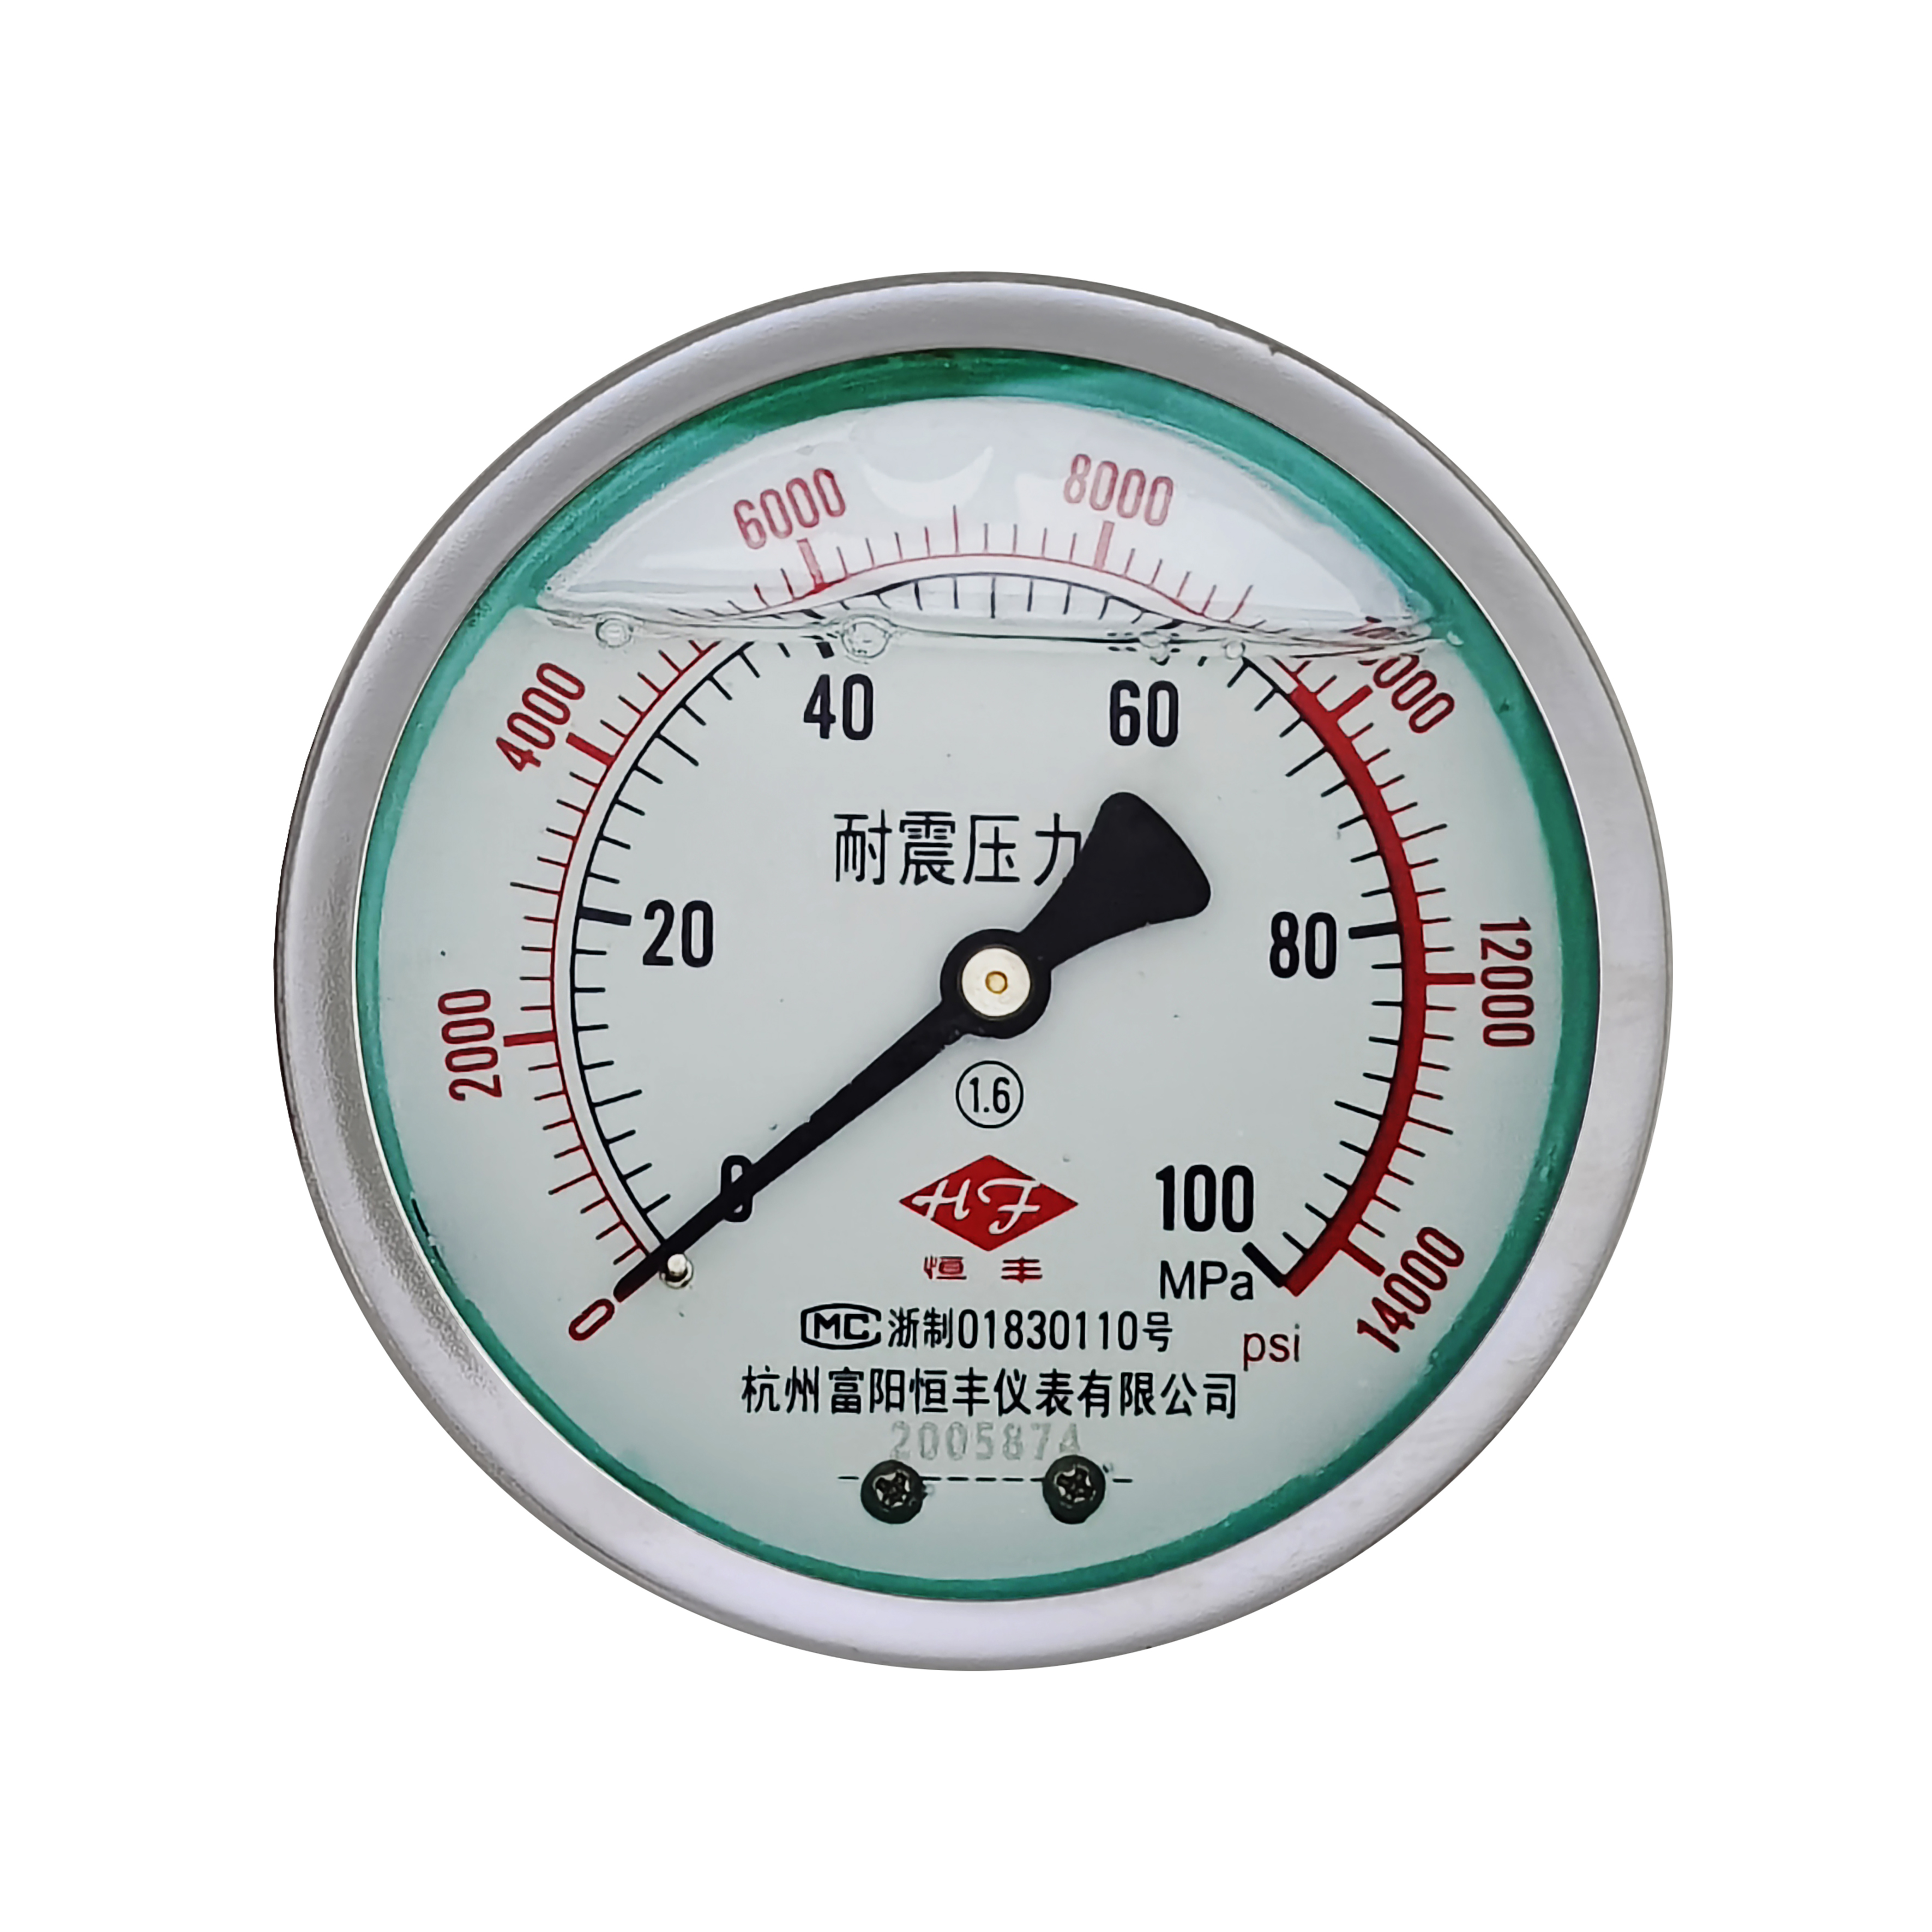 YN60ZT shock-proof pressure gauge